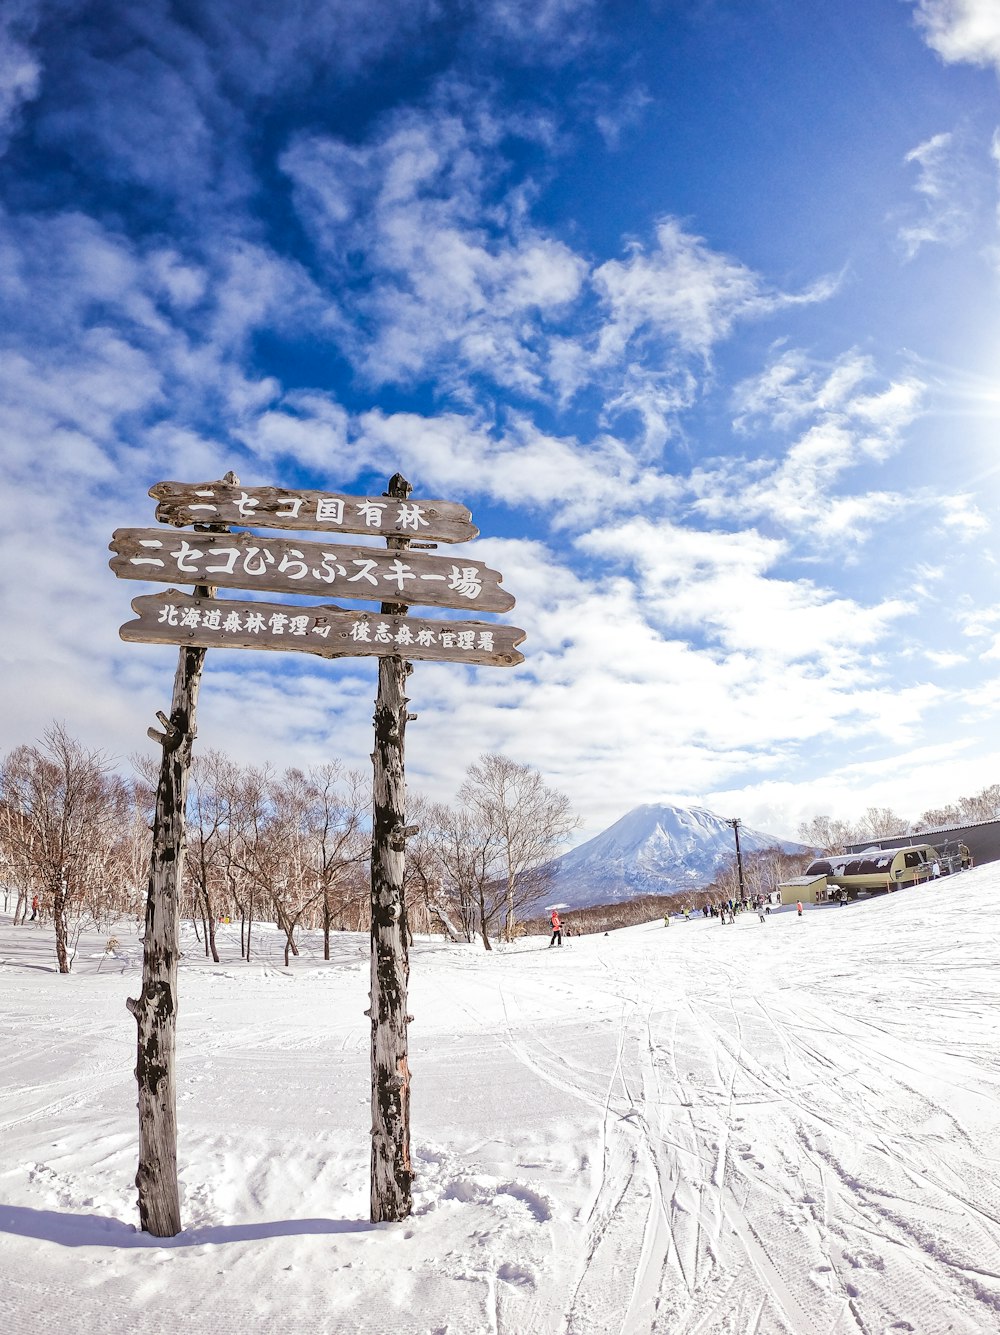 banco de madeira marrom no chão coberto de neve sob o céu nublado azul e branco durante o dia